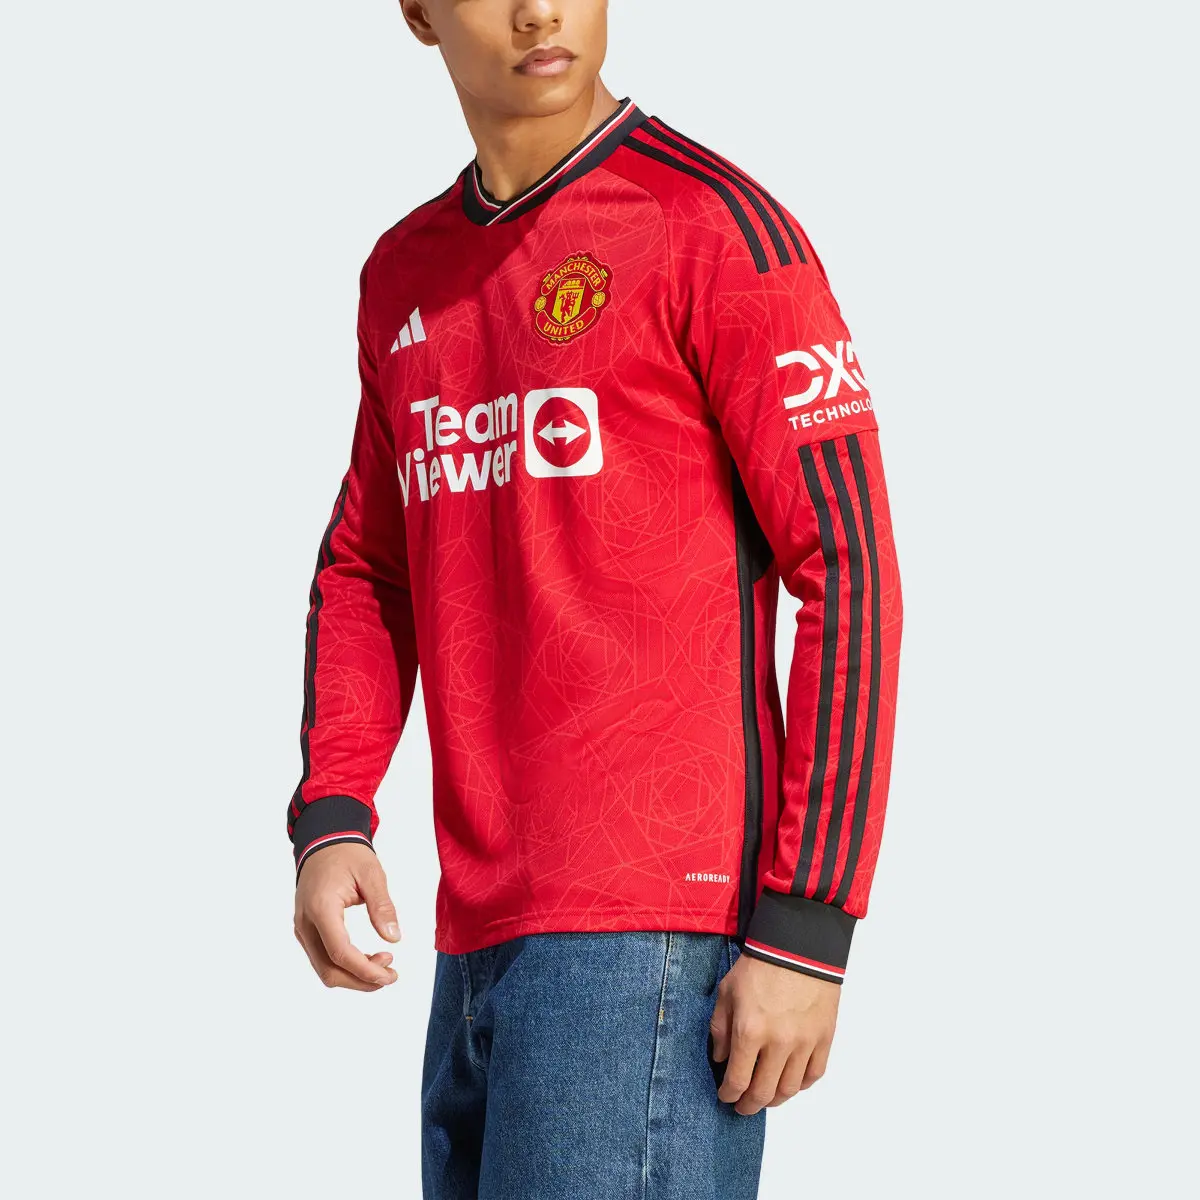 Adidas Camisola Principal de Manga Comprida 23/24 do Manchester United. 1